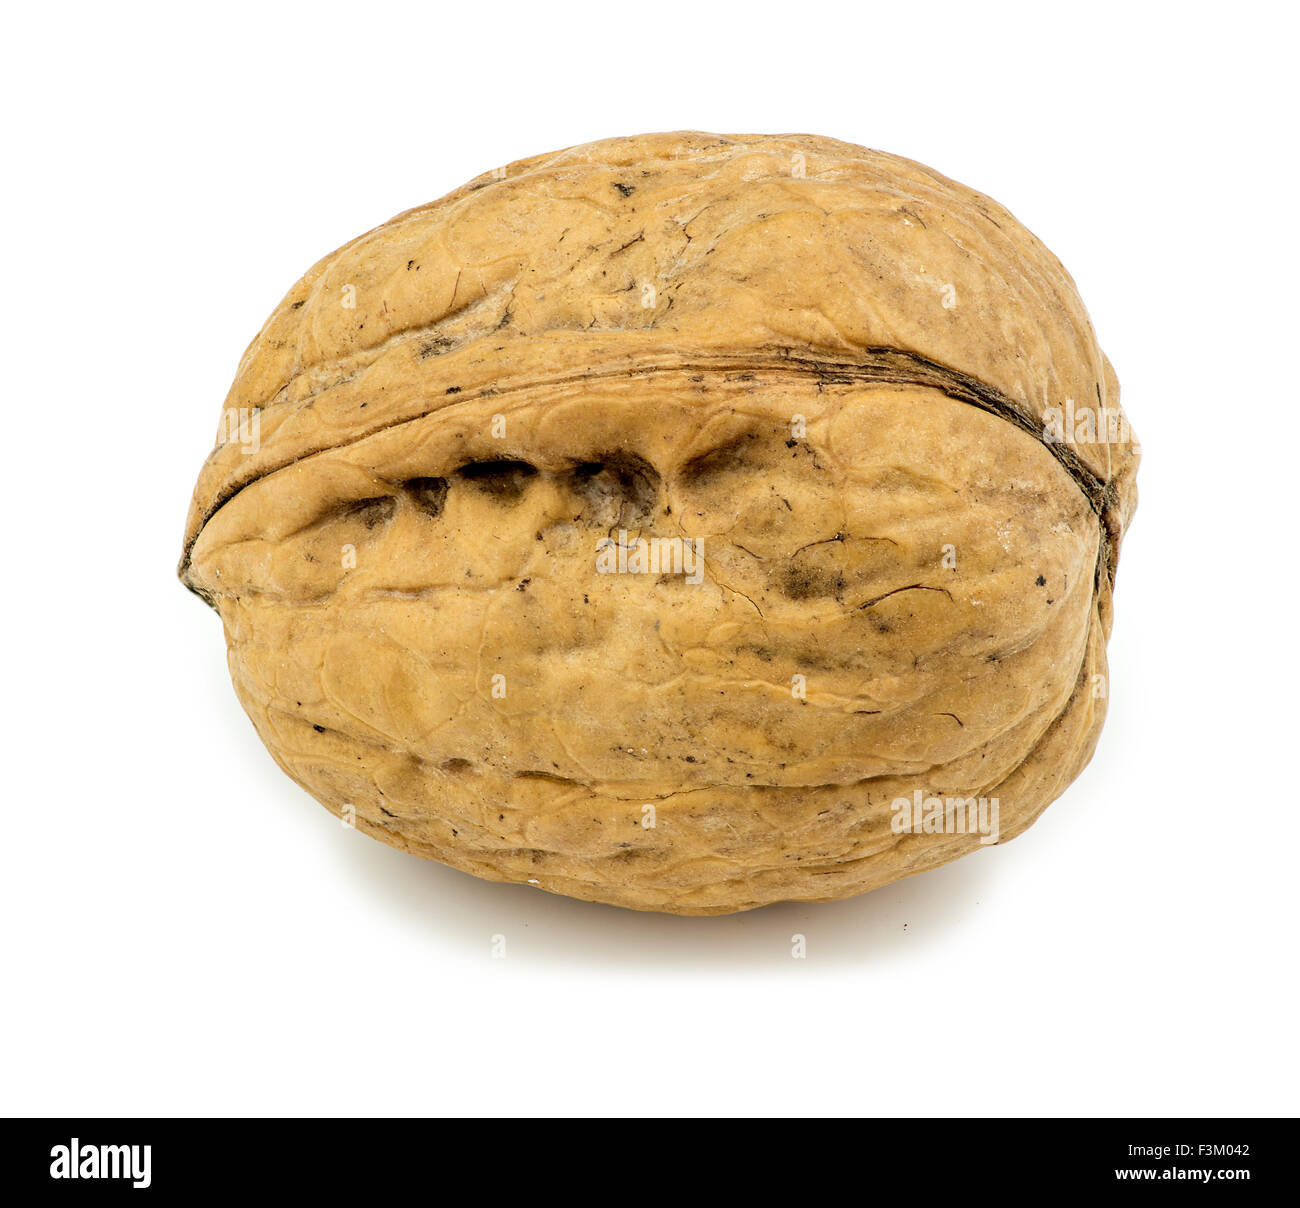 Macro closeup of unshelled walnut isolated on white Stock Photo